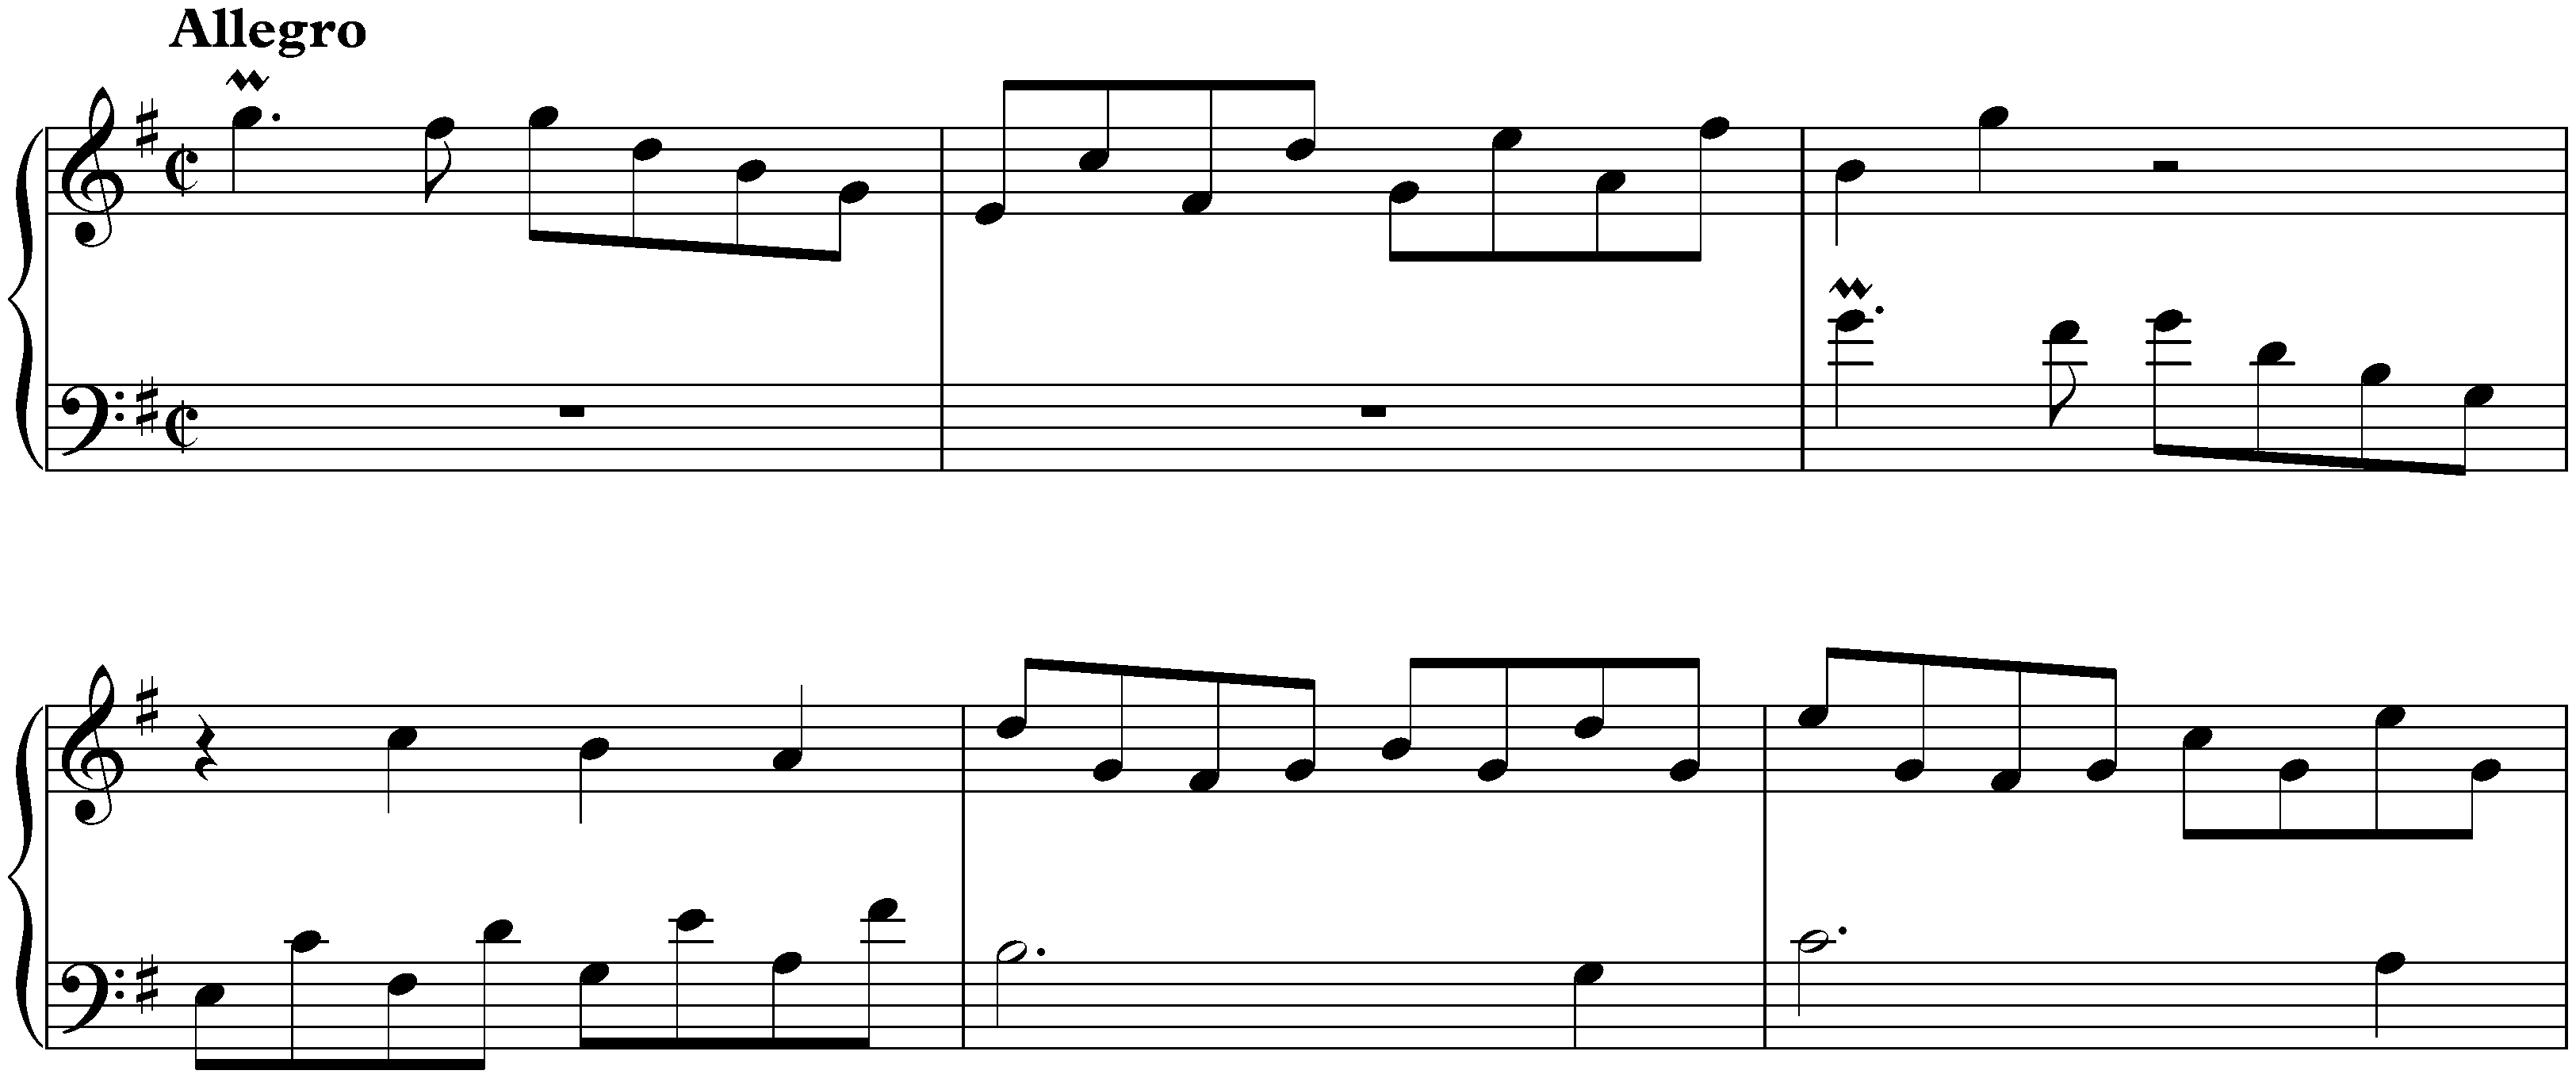 Sonata in G major, K. 314